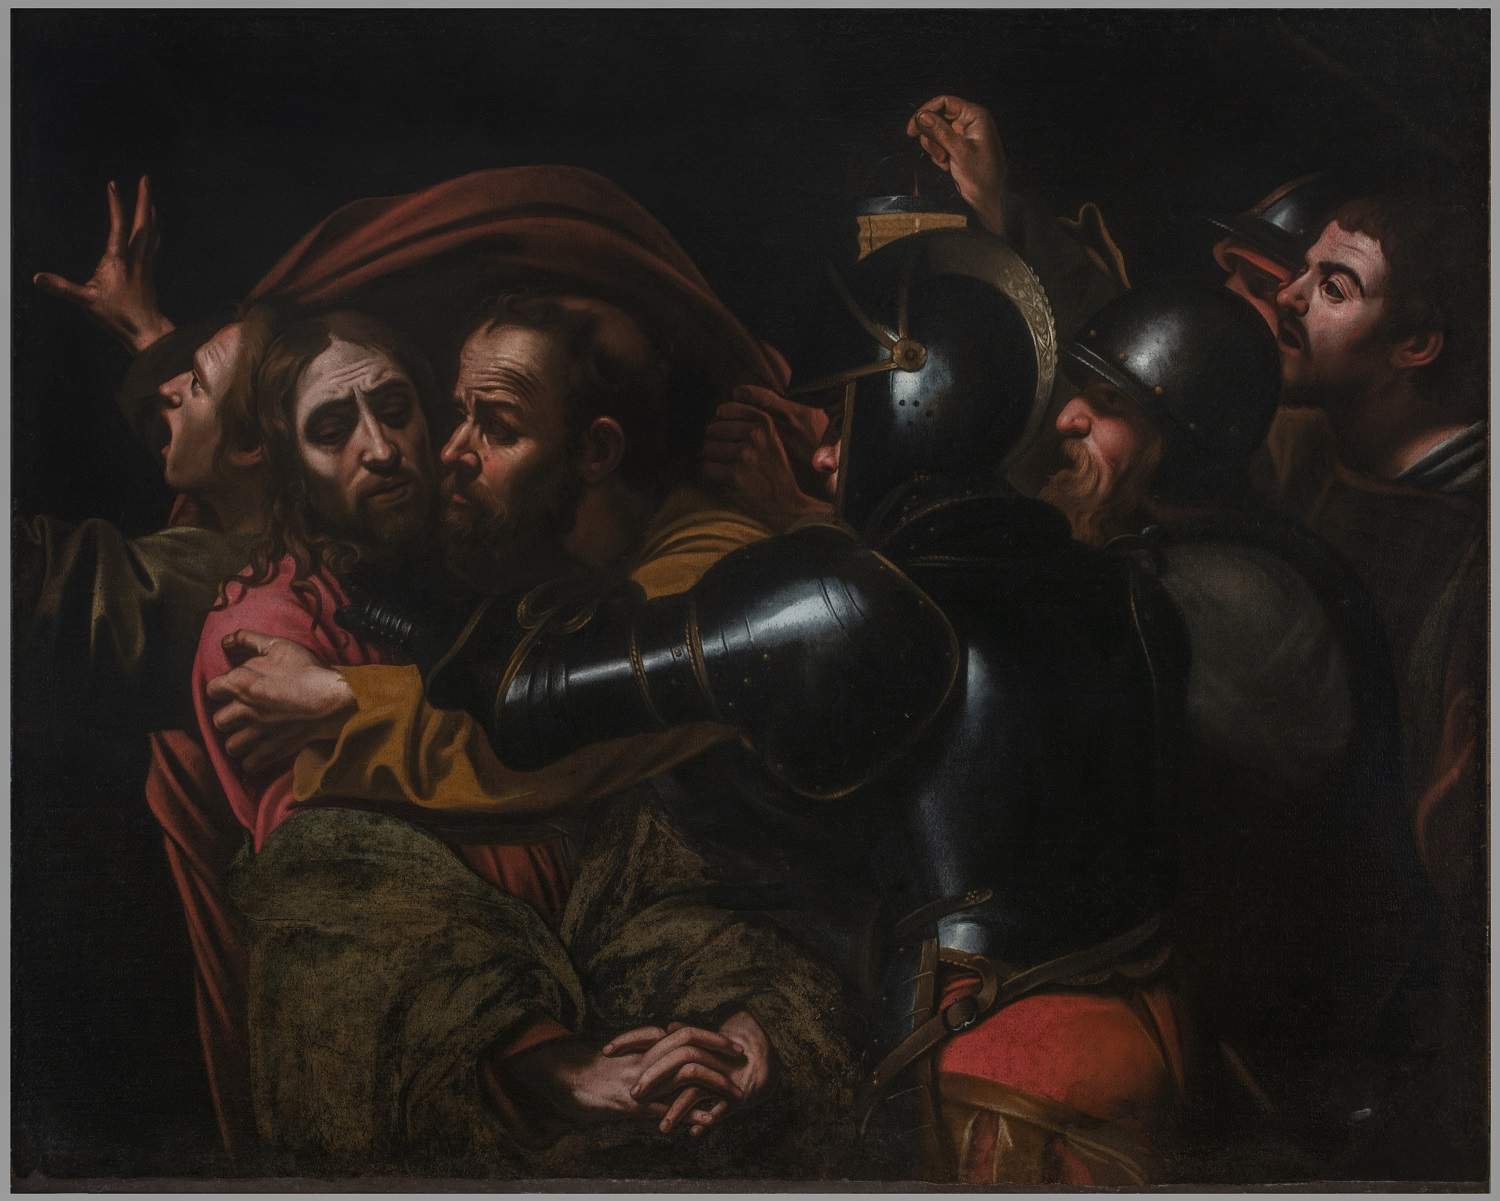 A Palazzo Pitti riemerge dopo decenni di assenza la copia della Cattura di Cristo del Caravaggio